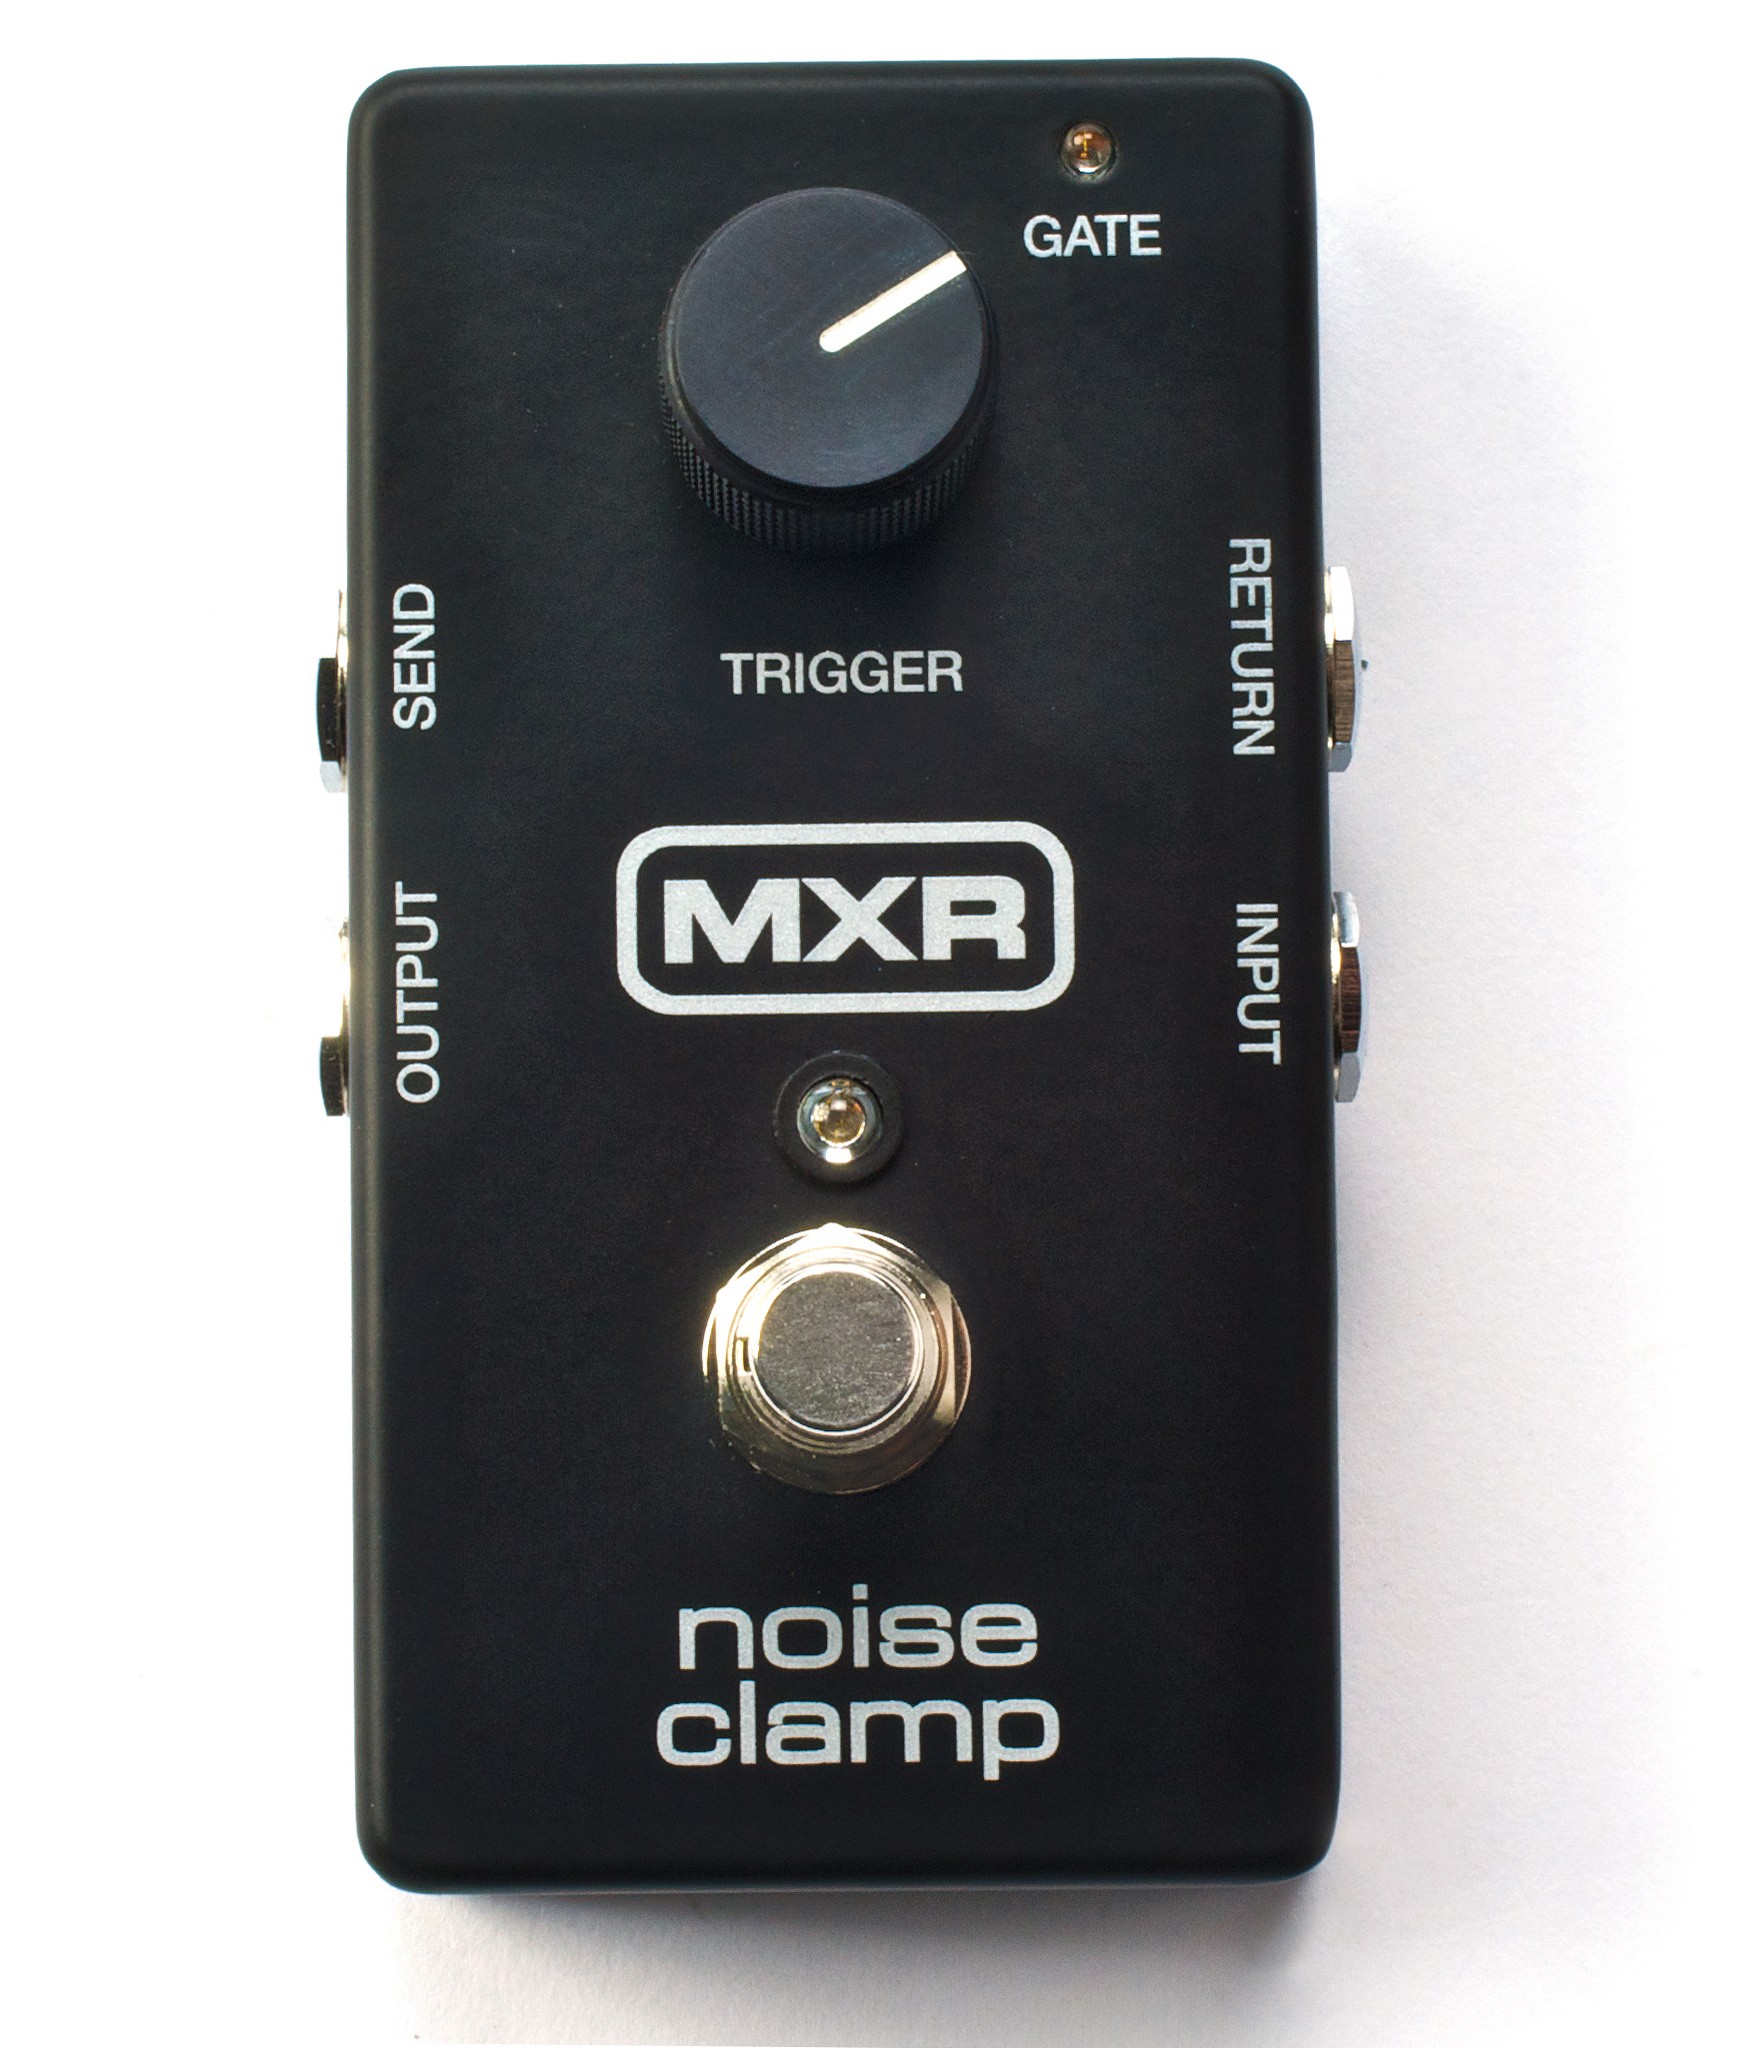 Dunlop MXR M195 Noise Clamp